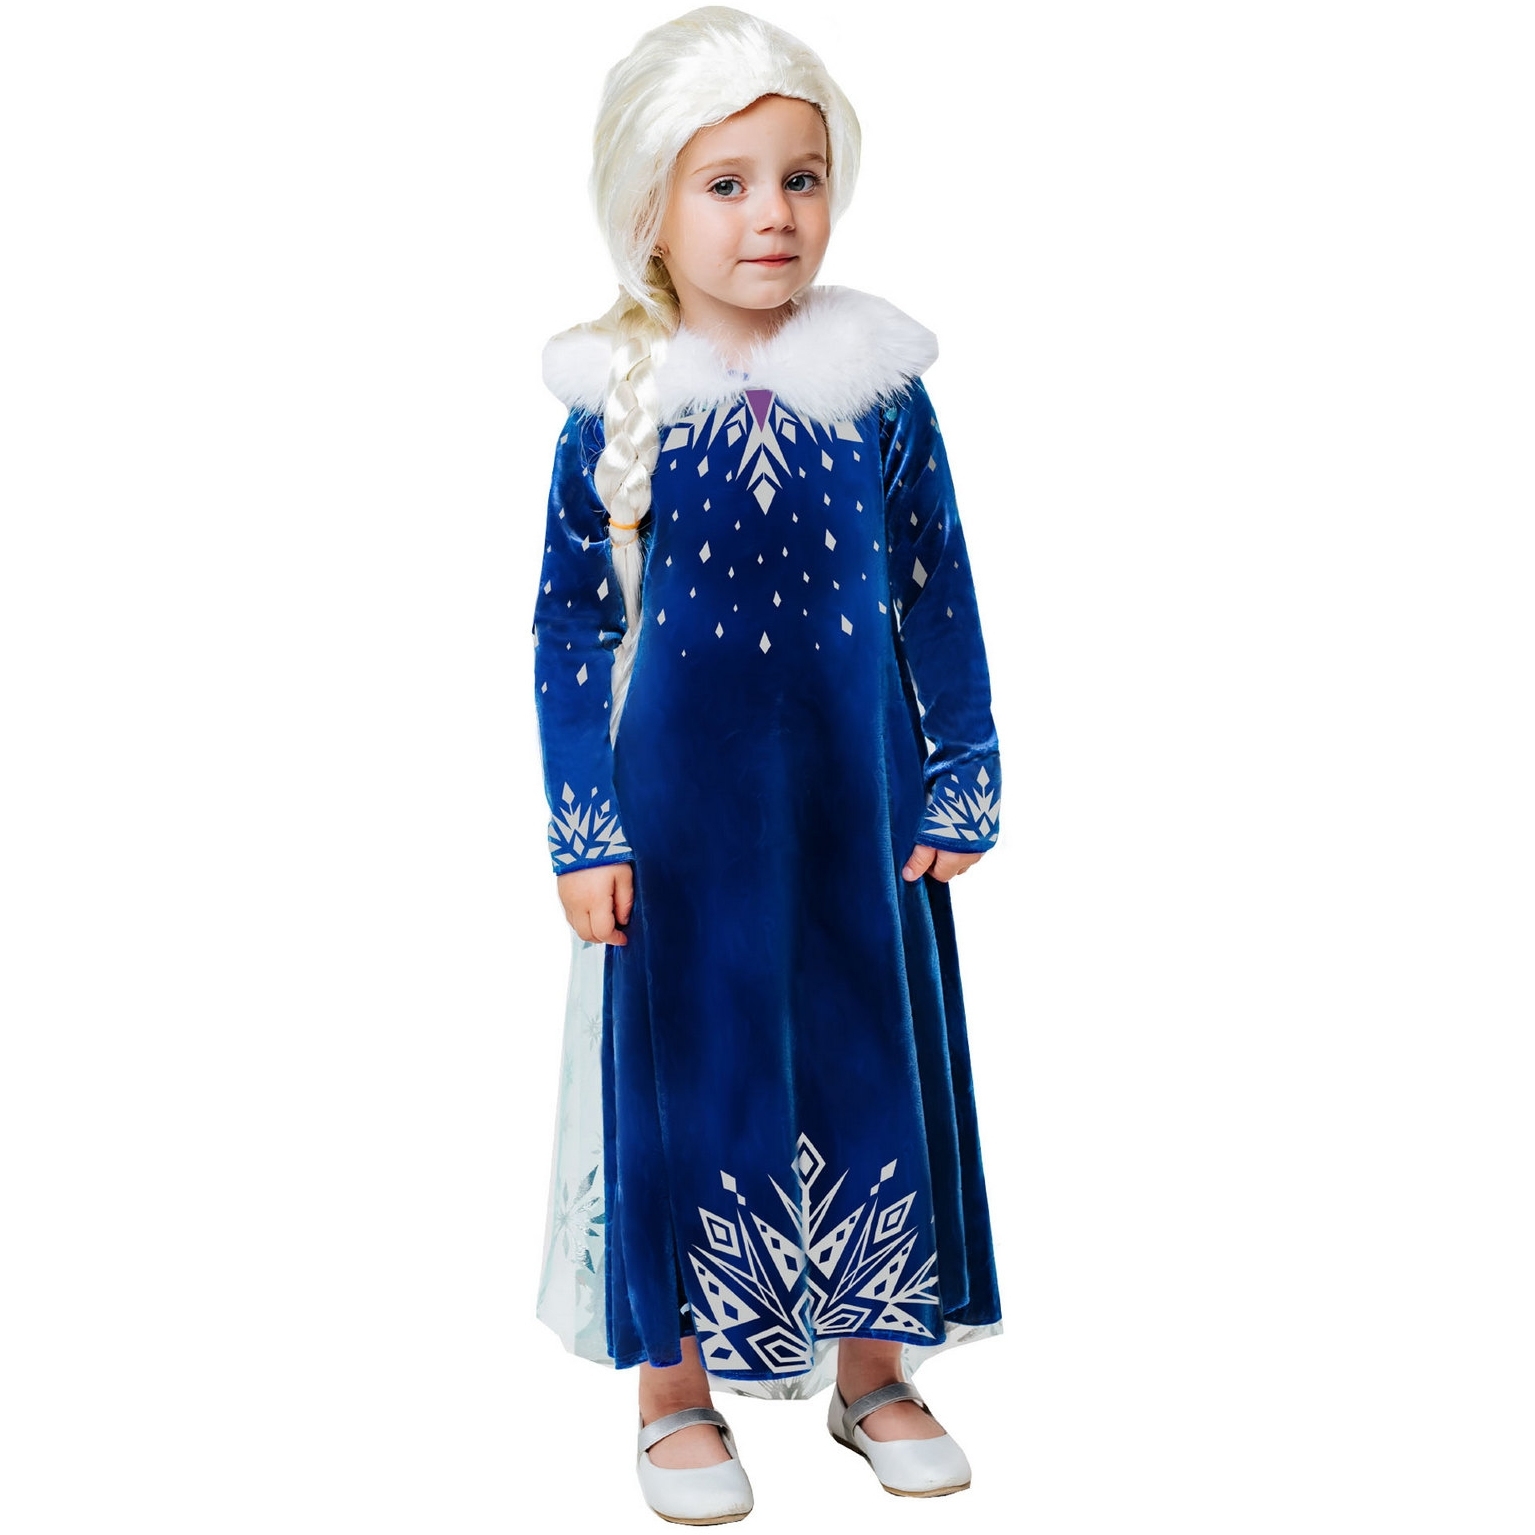 Карнавальный костюм "Эльза зимнее платье" (платье с накидкой, парик) размер 122-64